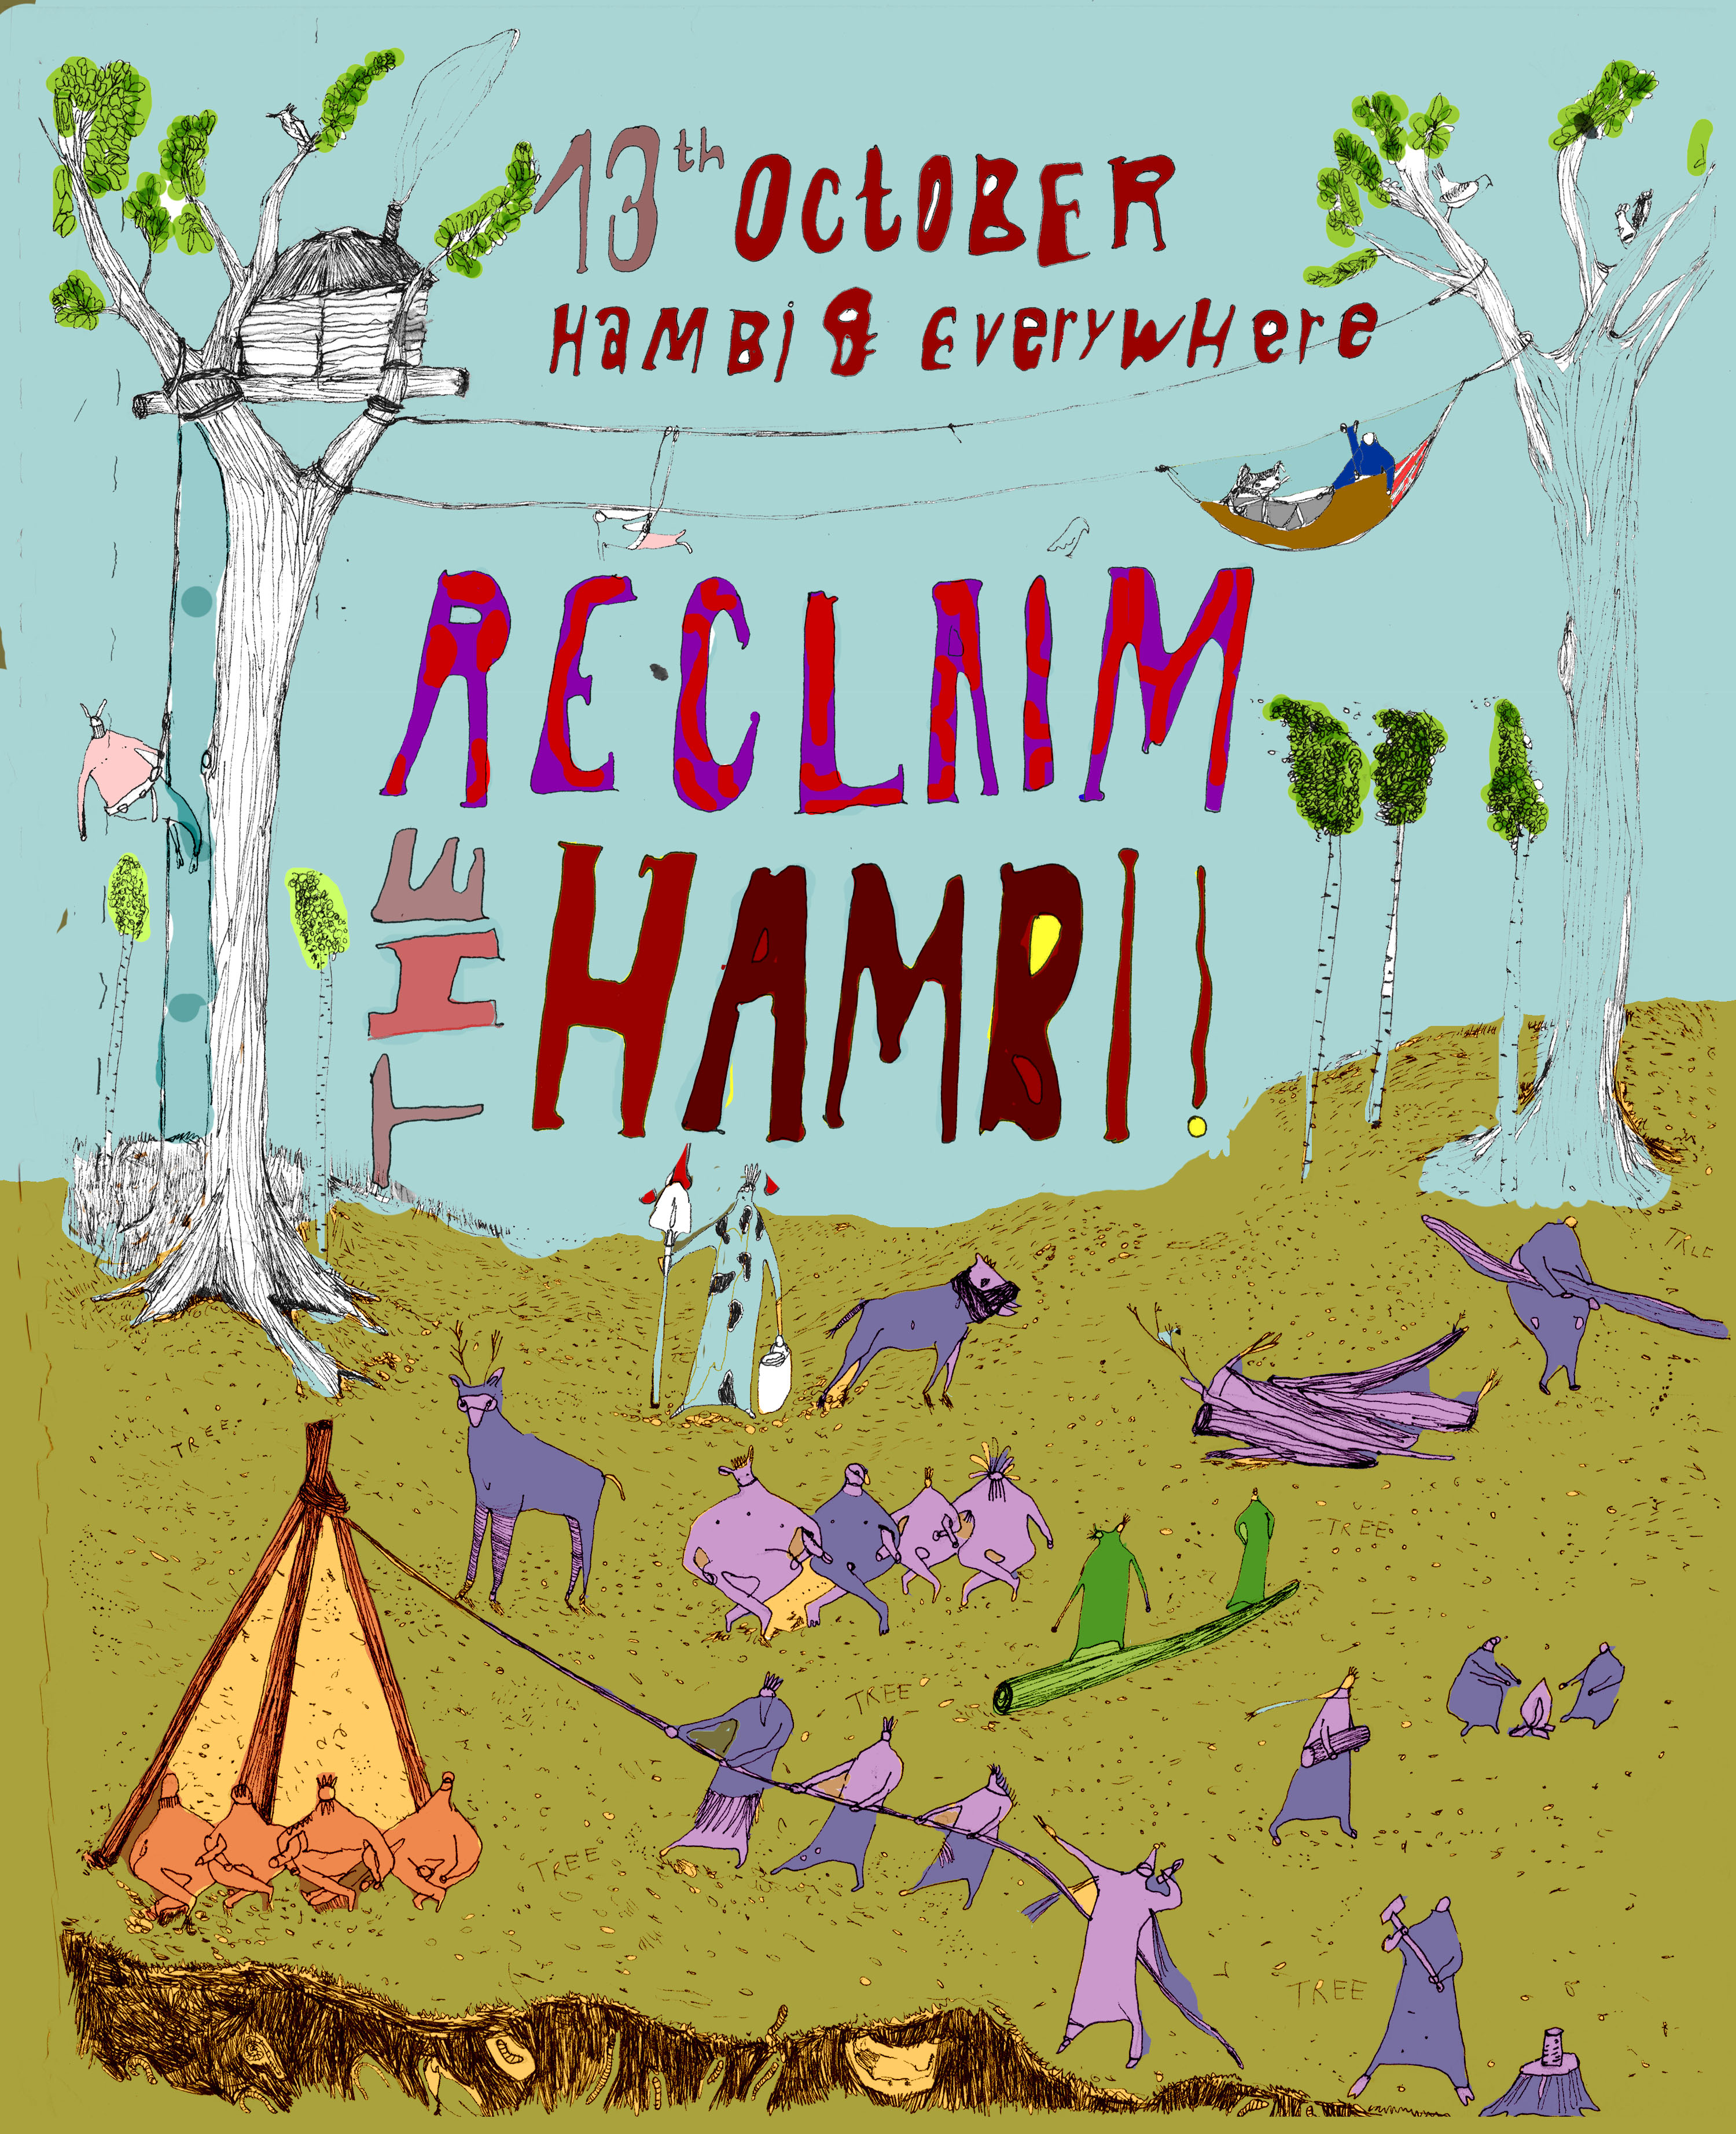 Reclaim the Hambi! – Reflektionen zu Strategie und Aufruf zu Aktionen